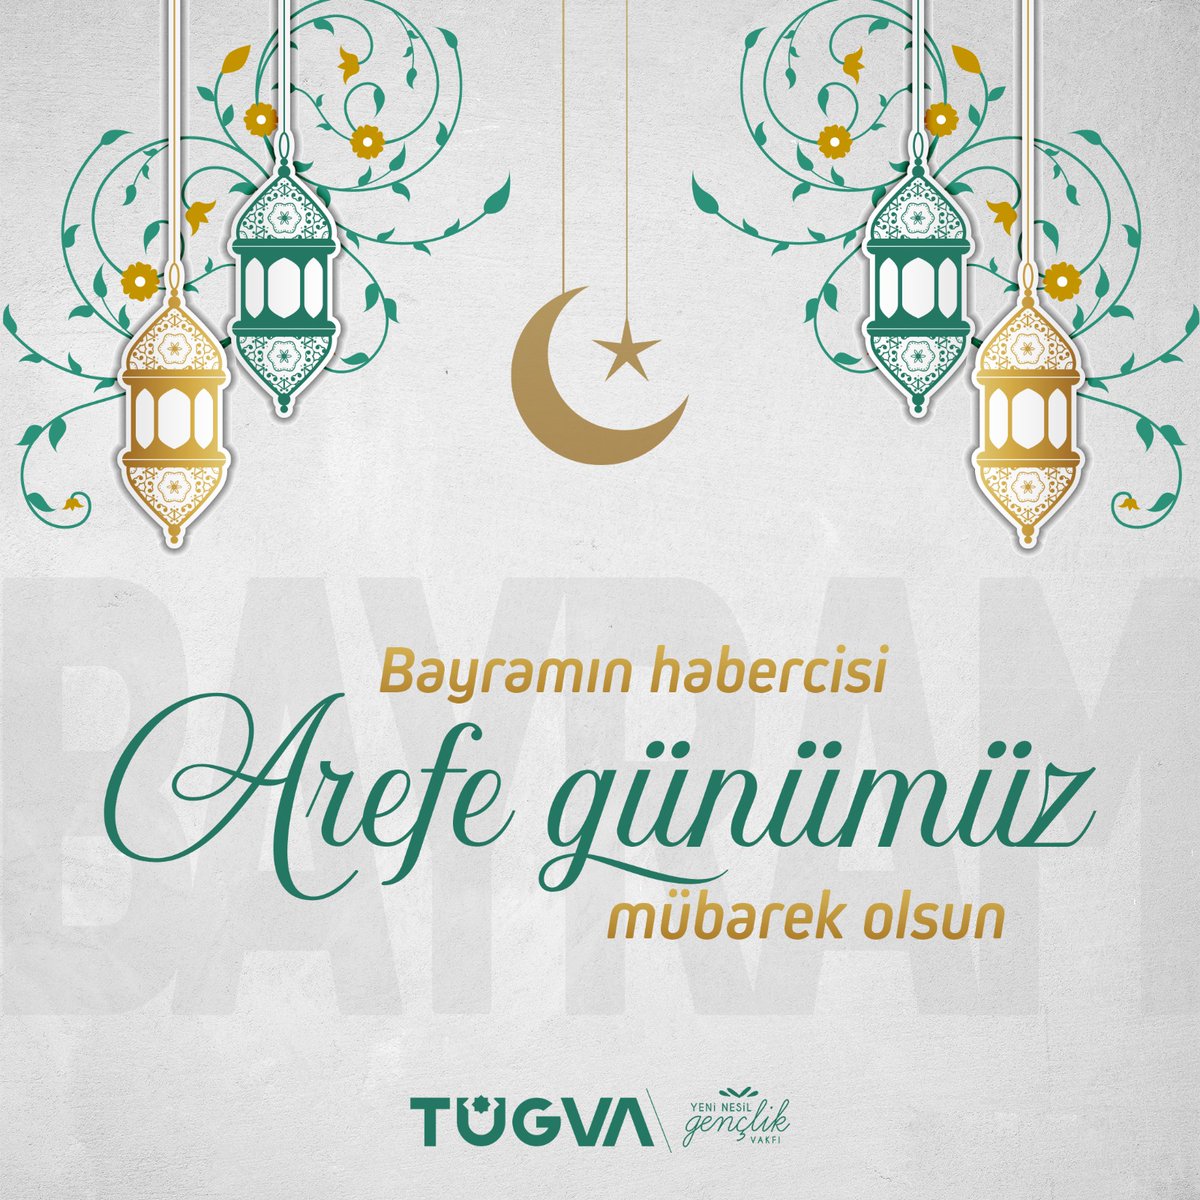 ELVEDA YA ŞEHR-İ RAMAZAN!🌙

Arefe günümüz mübarek olsun.

#TÜGVA #ArefeGünü #Ramazan #RamazanBayramı